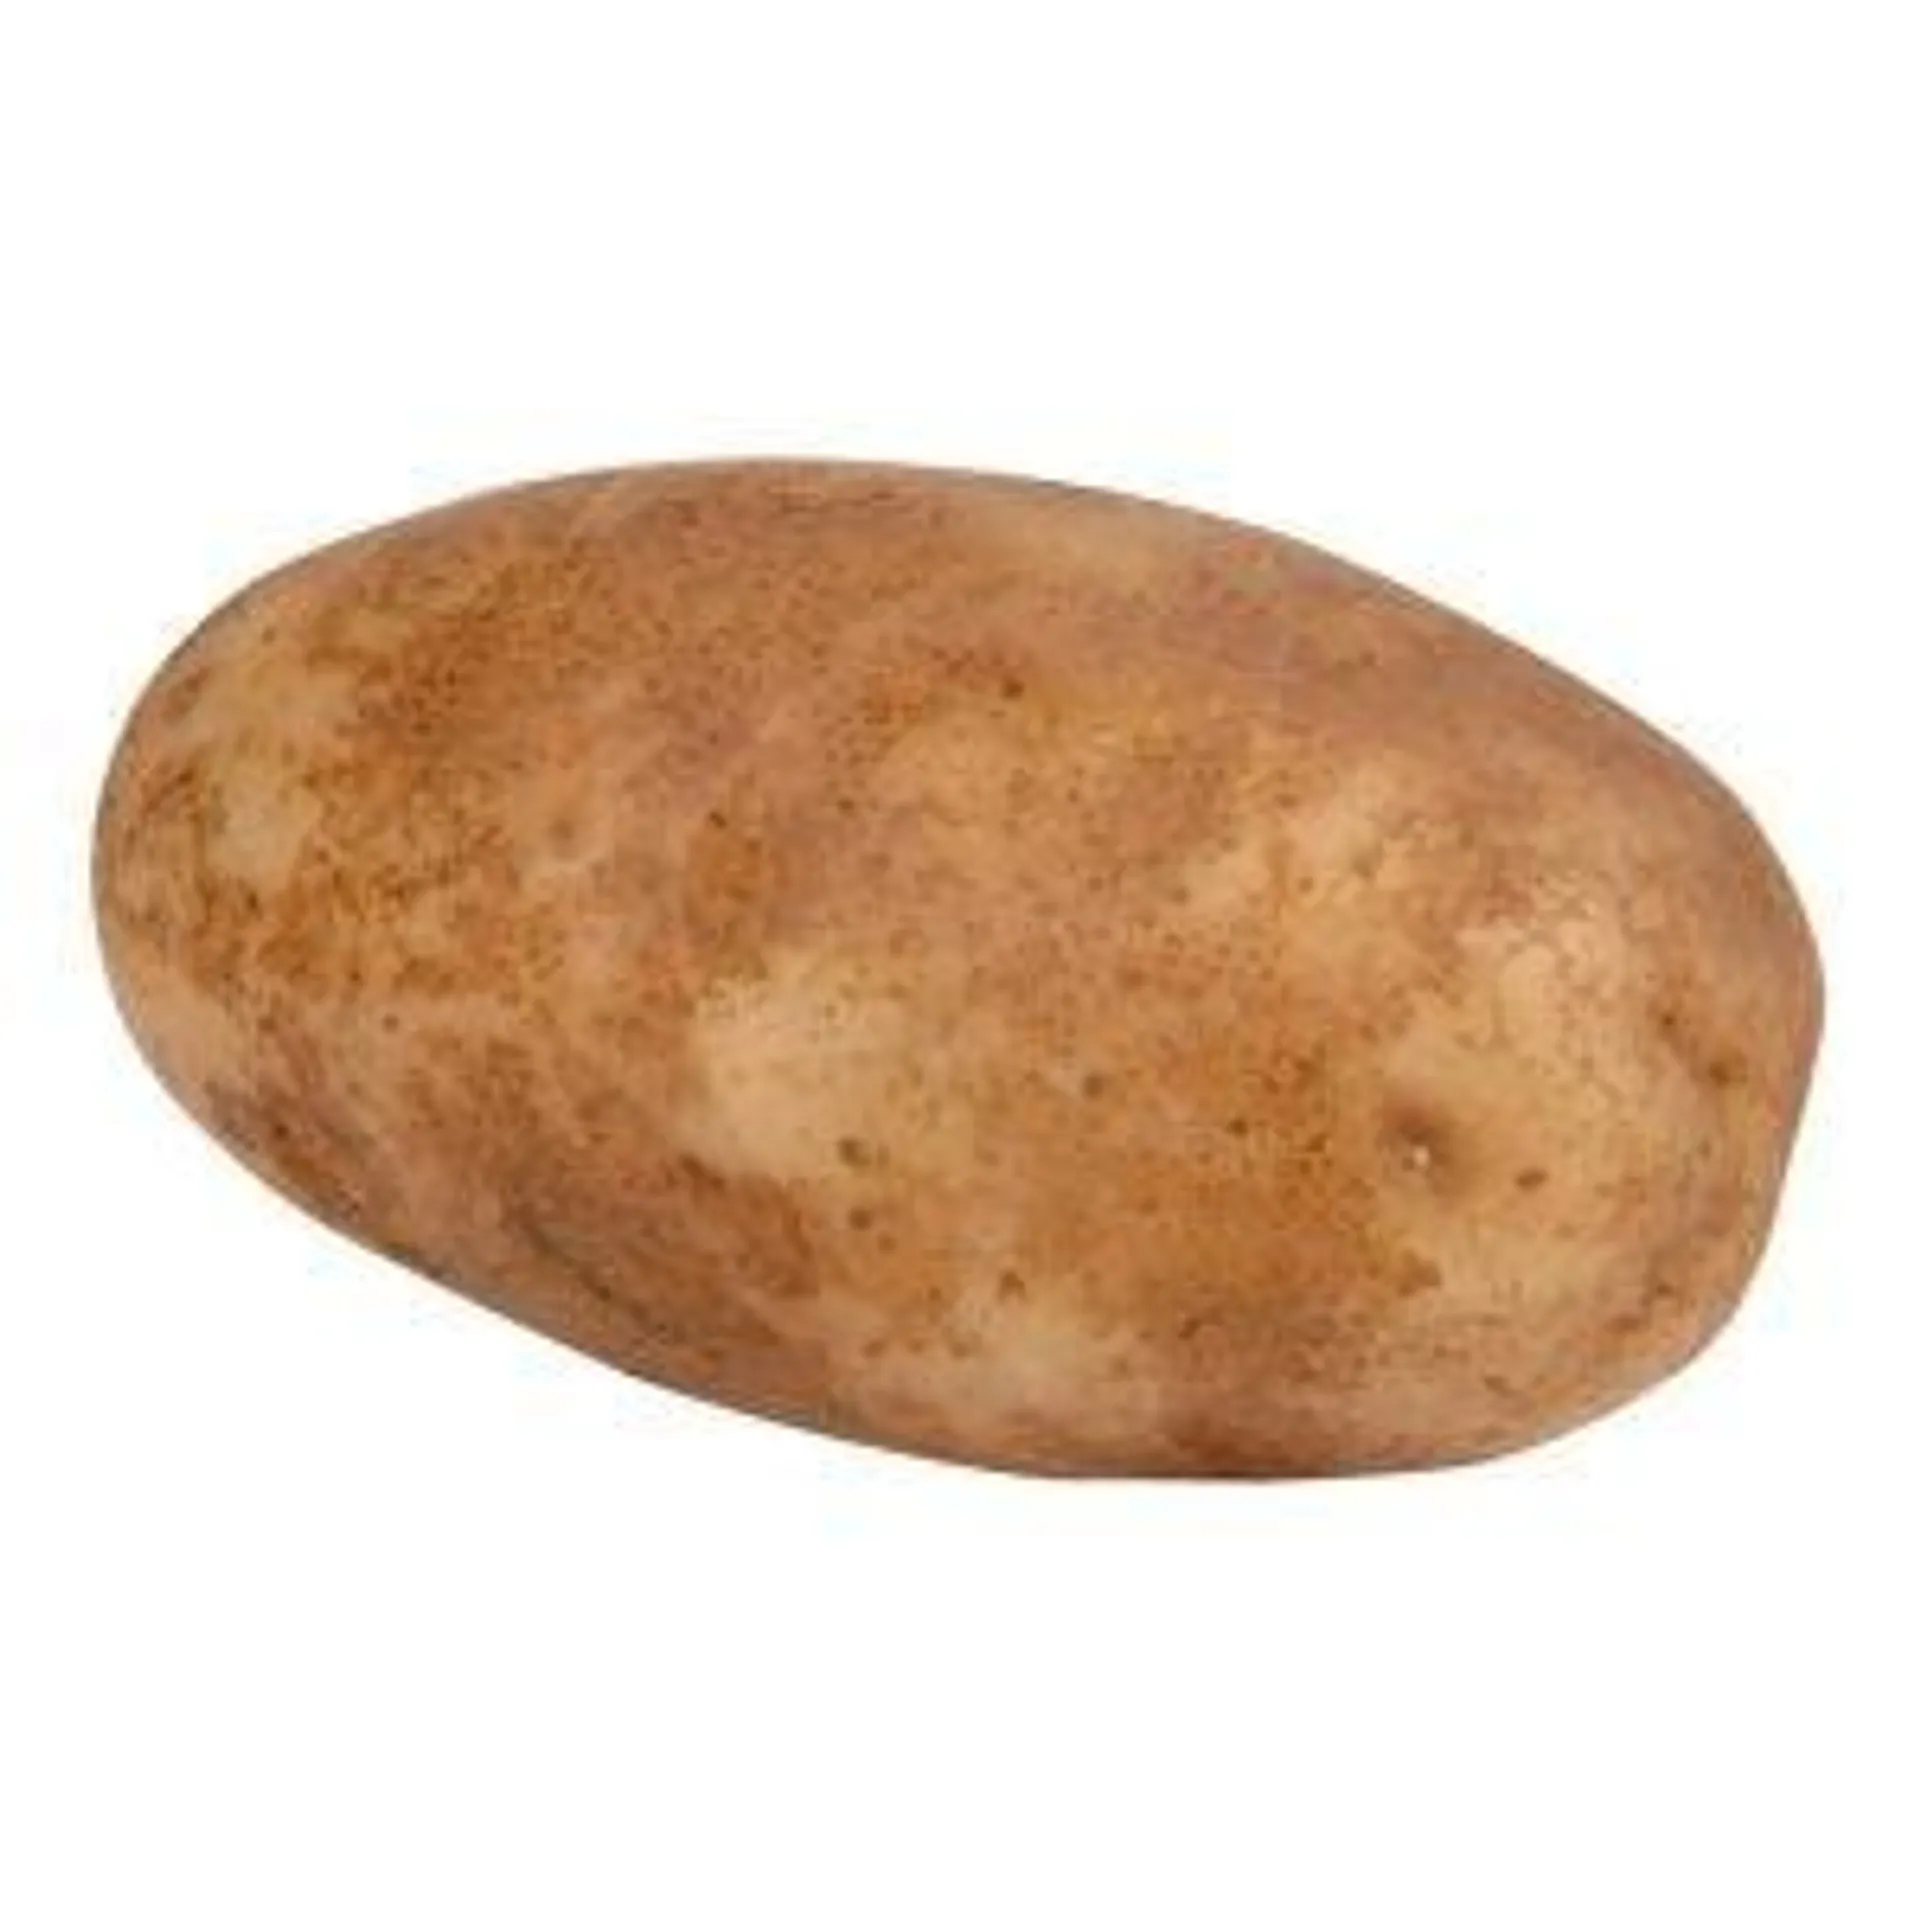 Idaho Baker Potatoes